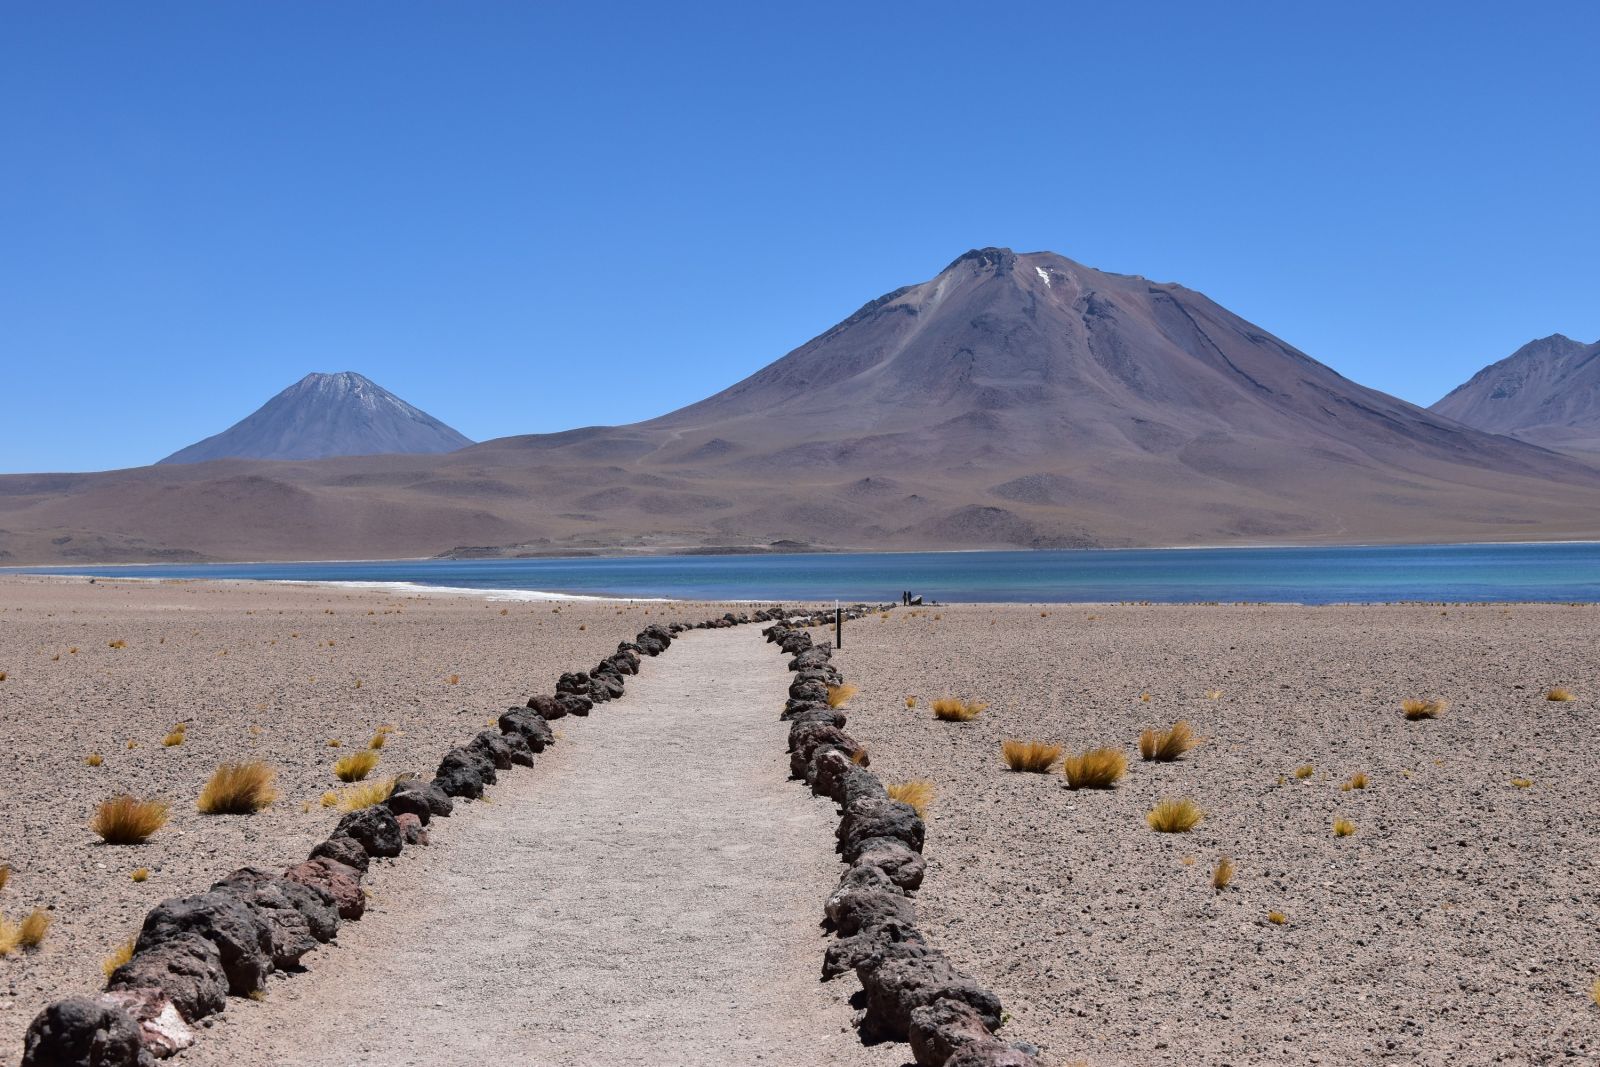 Atacama-Wüste: Vulkane, Lagunen und Flamingos